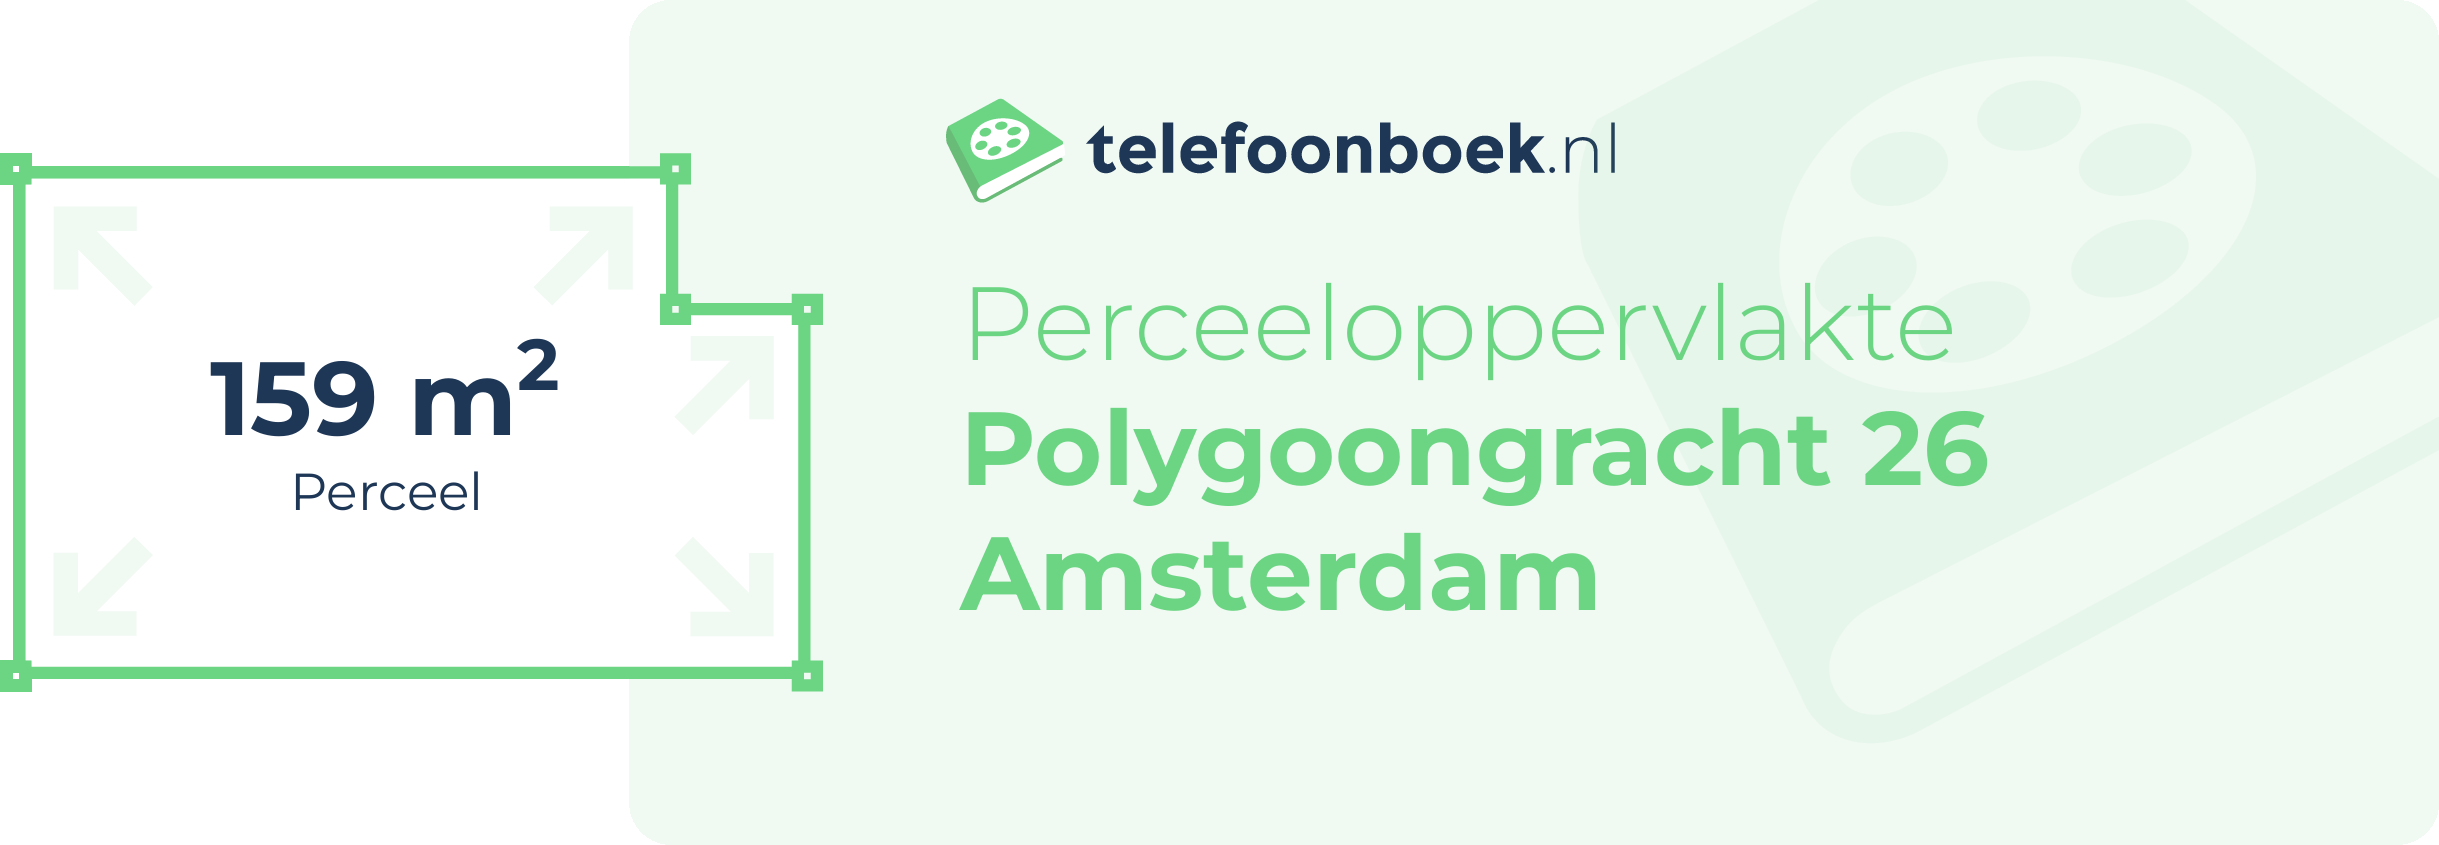 Perceeloppervlakte Polygoongracht 26 Amsterdam